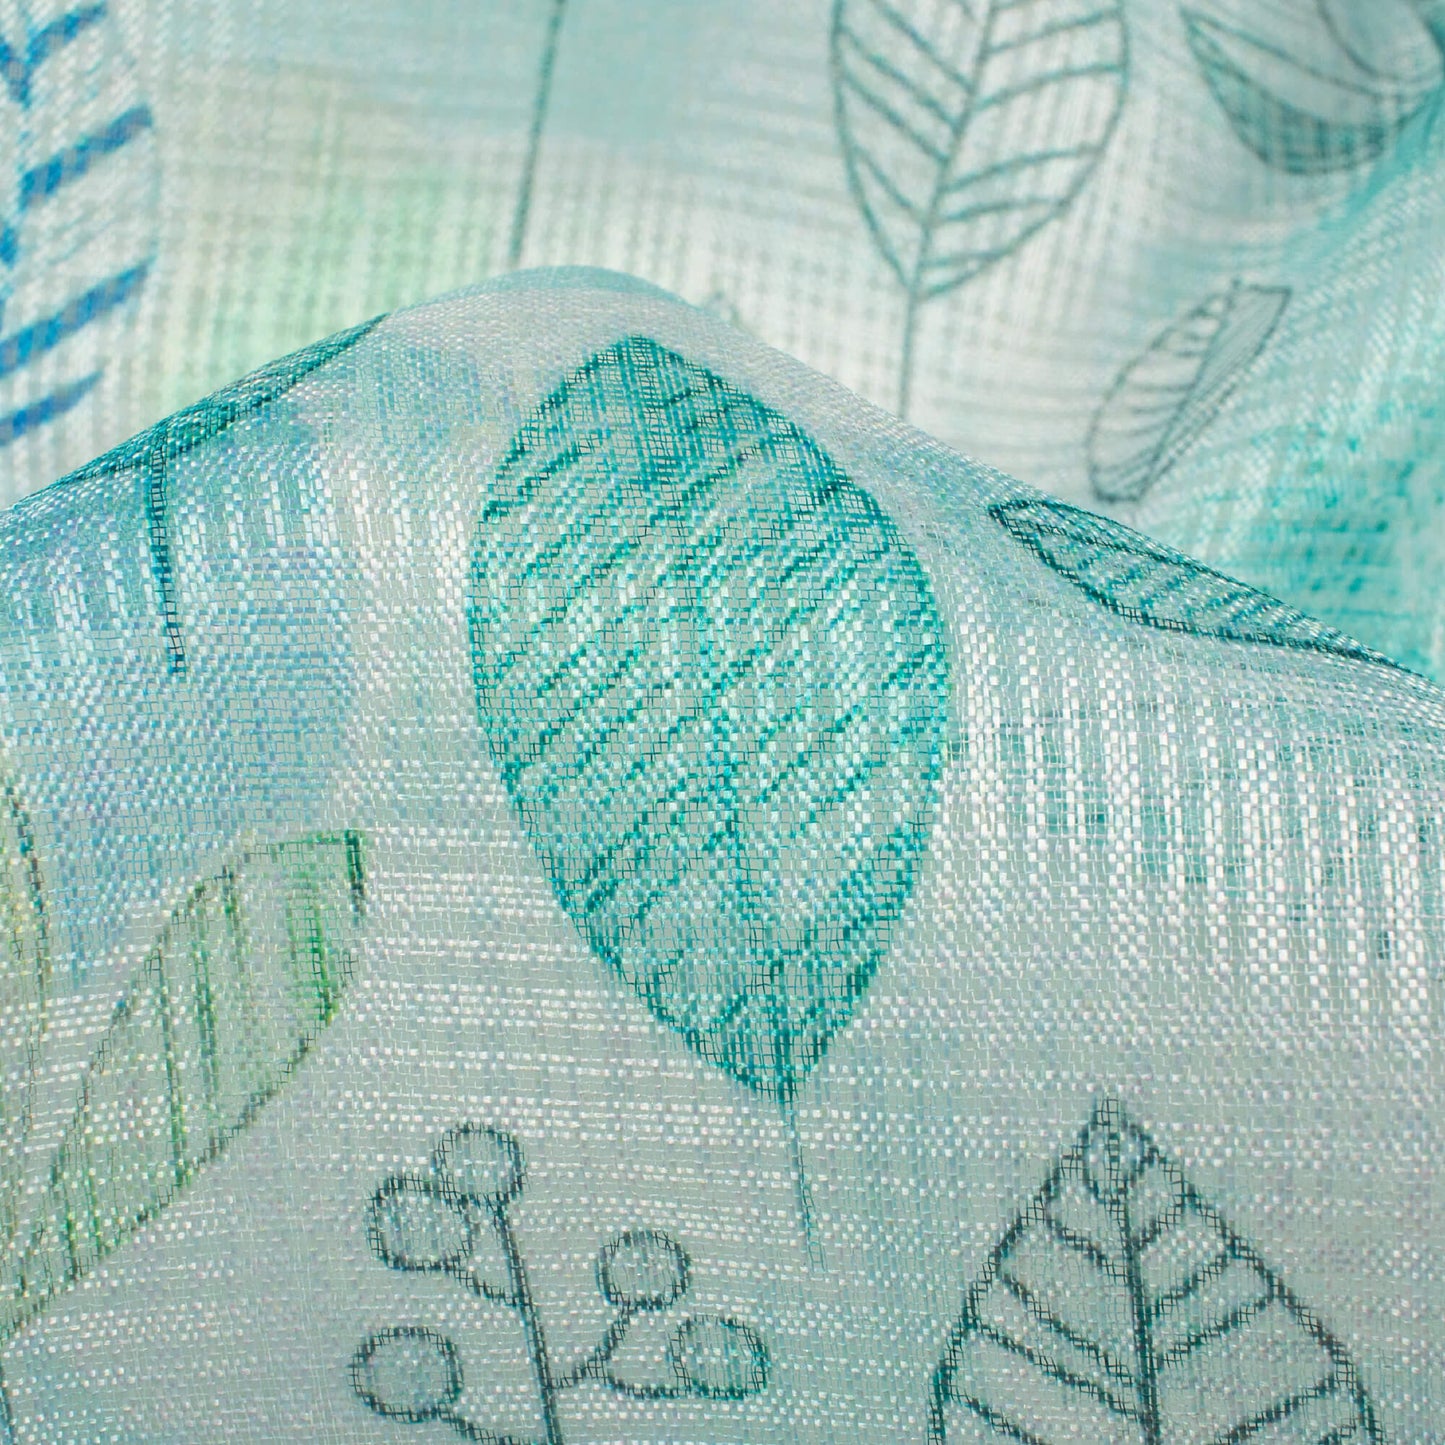 Mint Green And Blue Leaf Pattern Digital Print Kota Doria Fabric